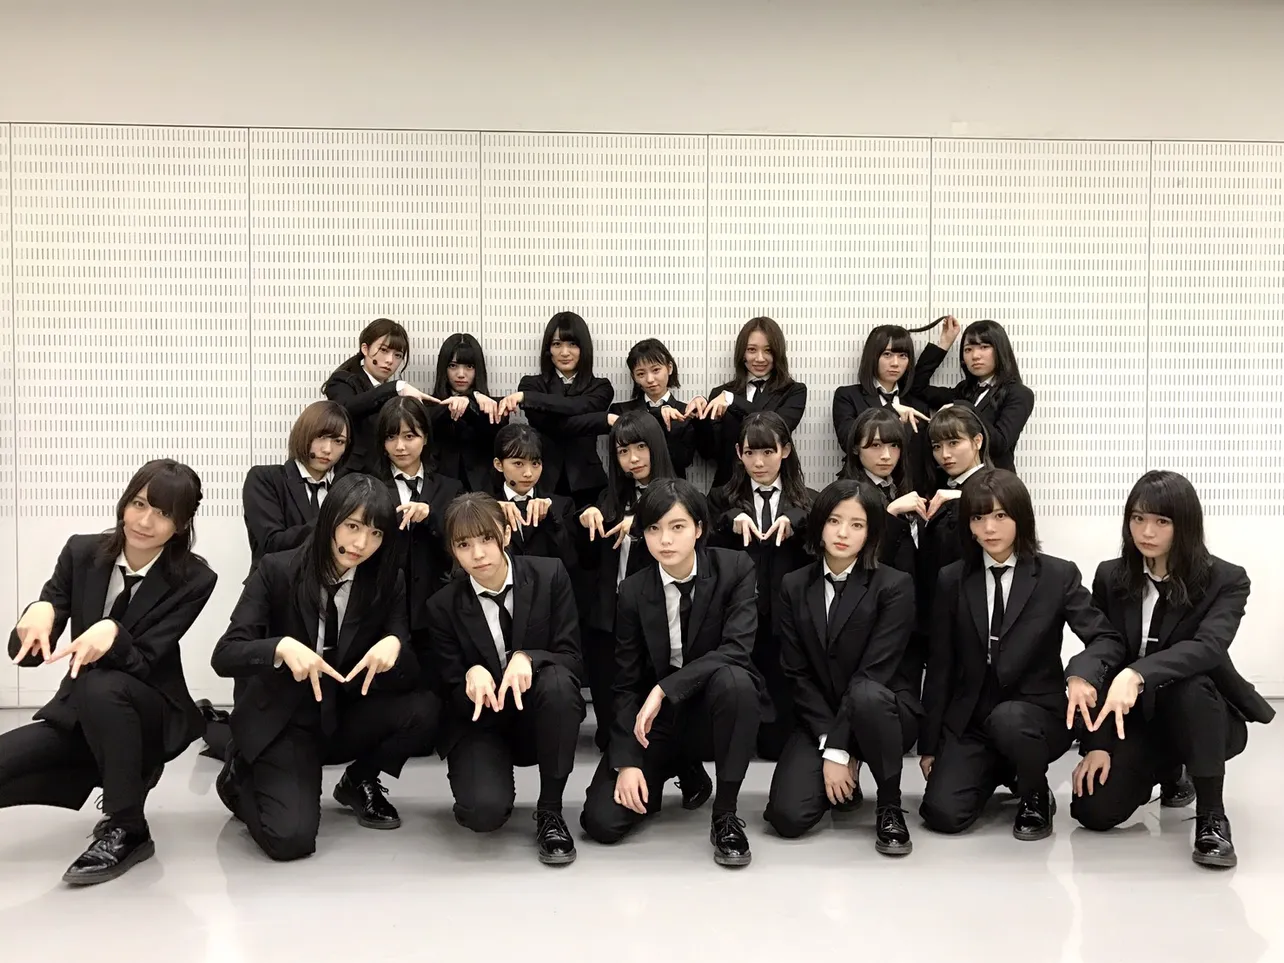 欅坂46は、笑顔を解禁したことでも注目を集める「風に吹かれても」を披露！